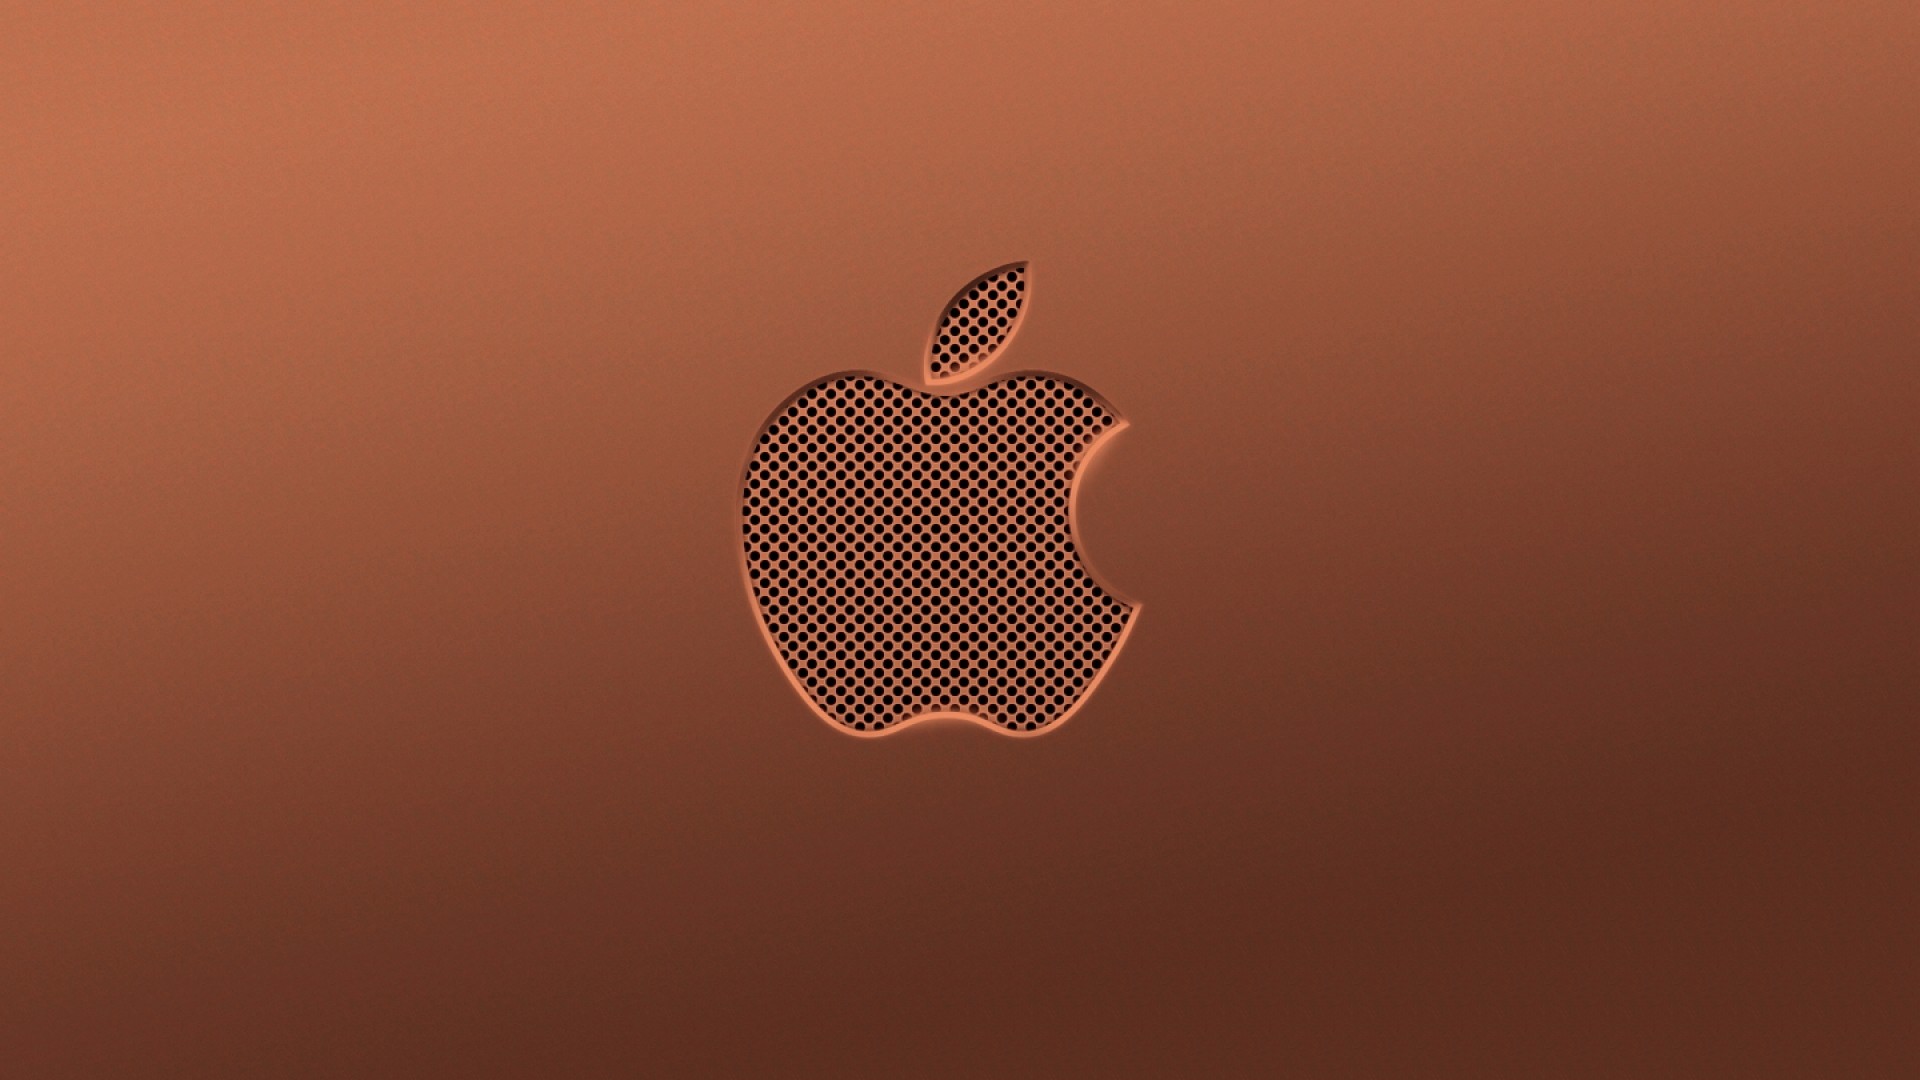 Обои iphone высокого качества. Обои Apple. Обои на айфон. Логотип Apple. Обои для IPAD.